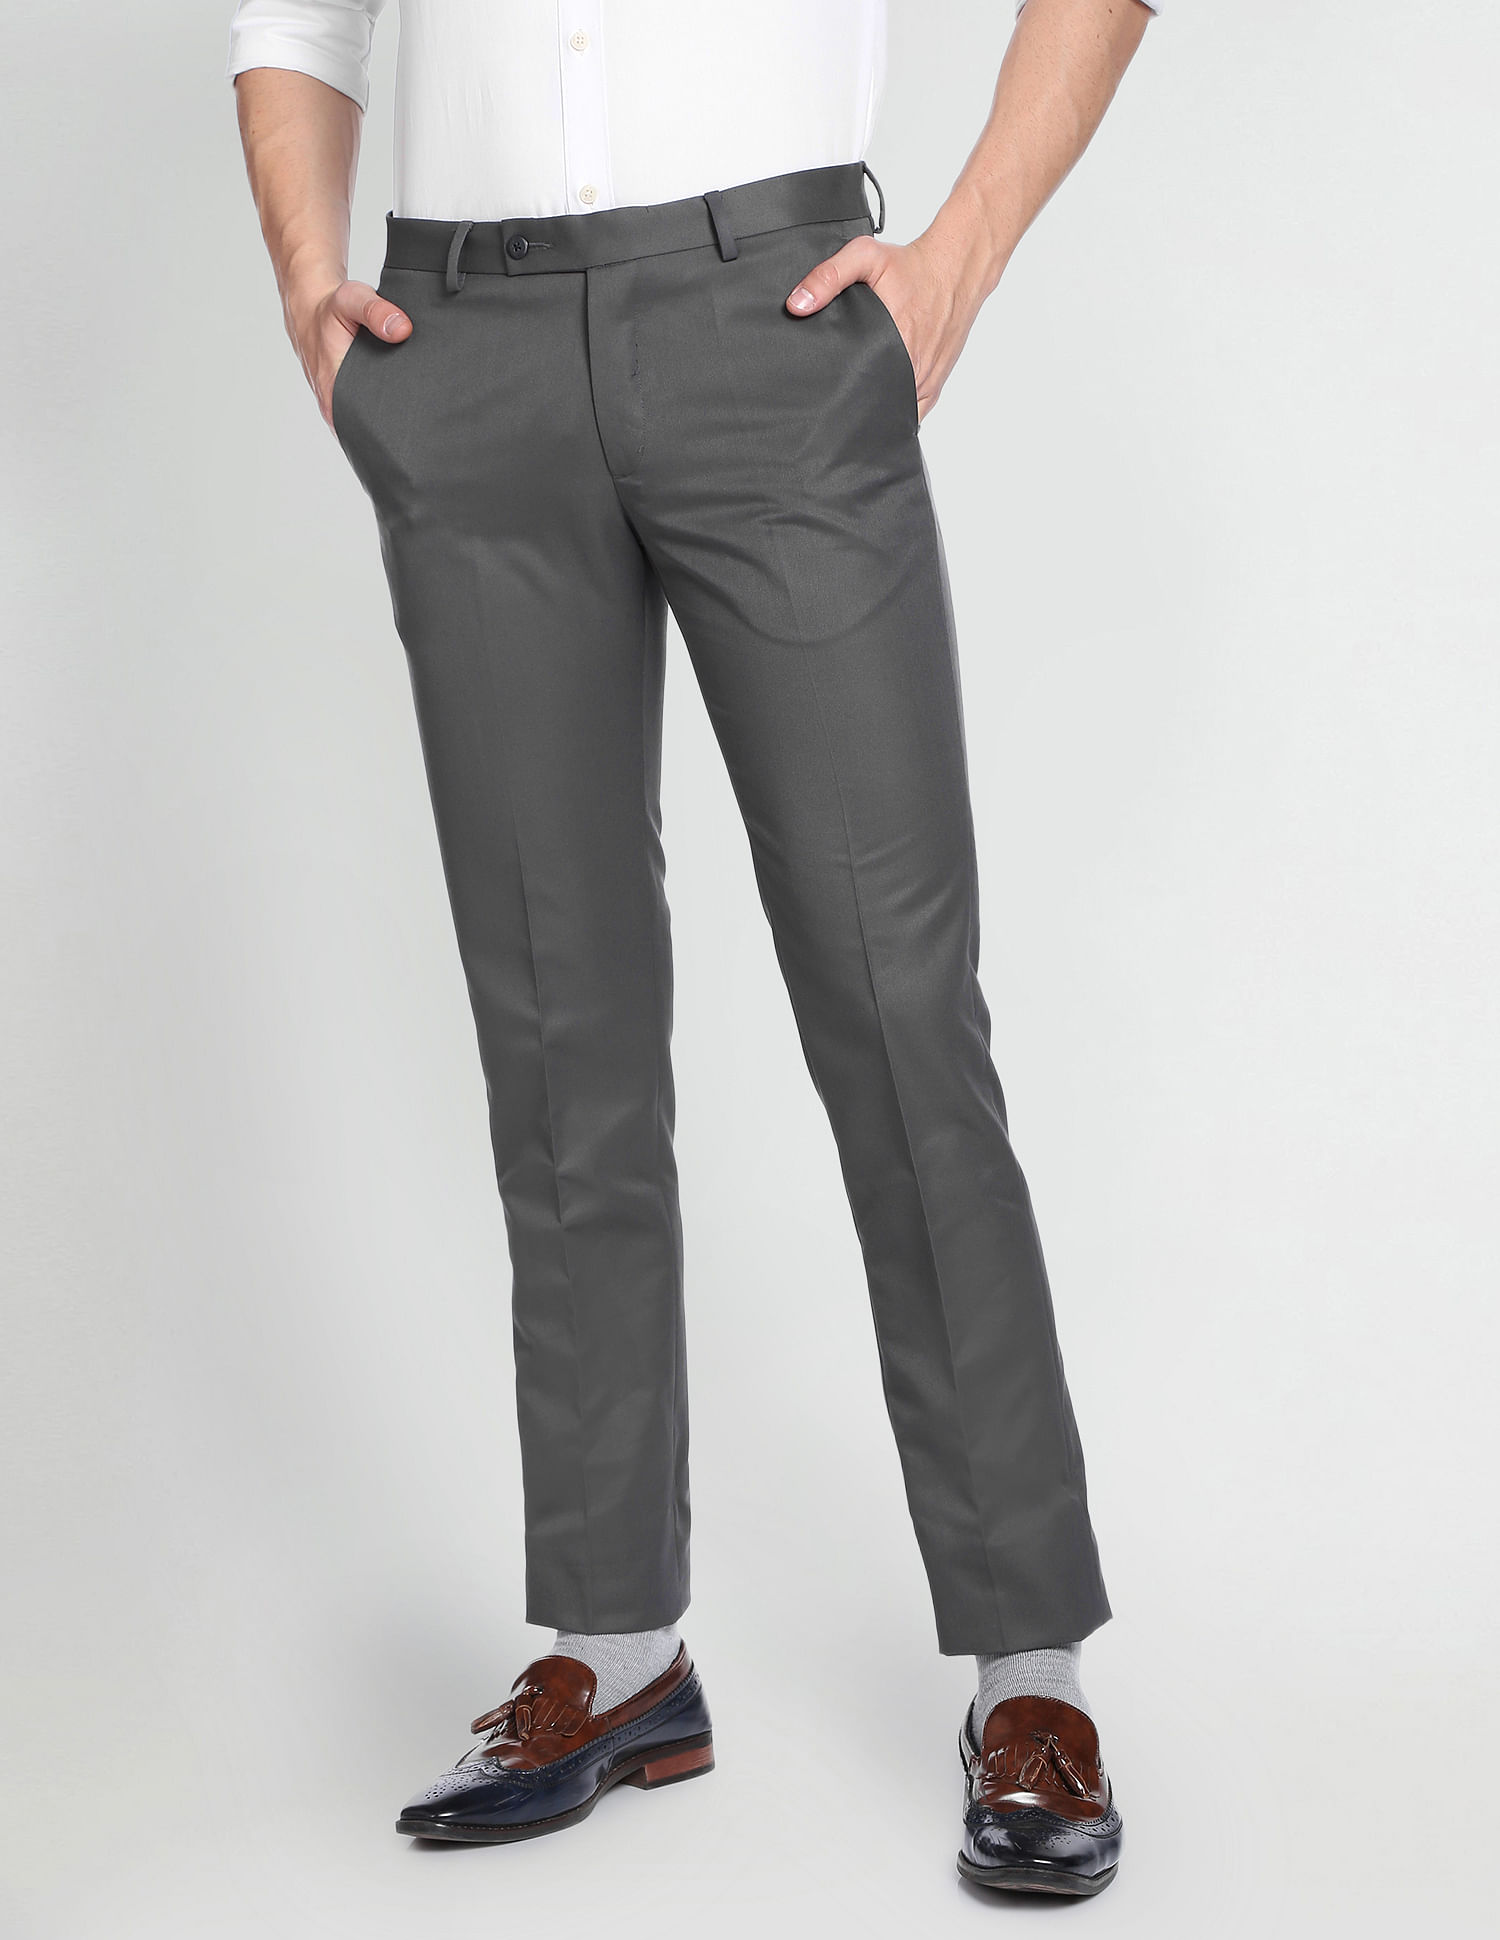 Italian Fit Men Trousers - Buy Italian Fit Men Trousers online in India